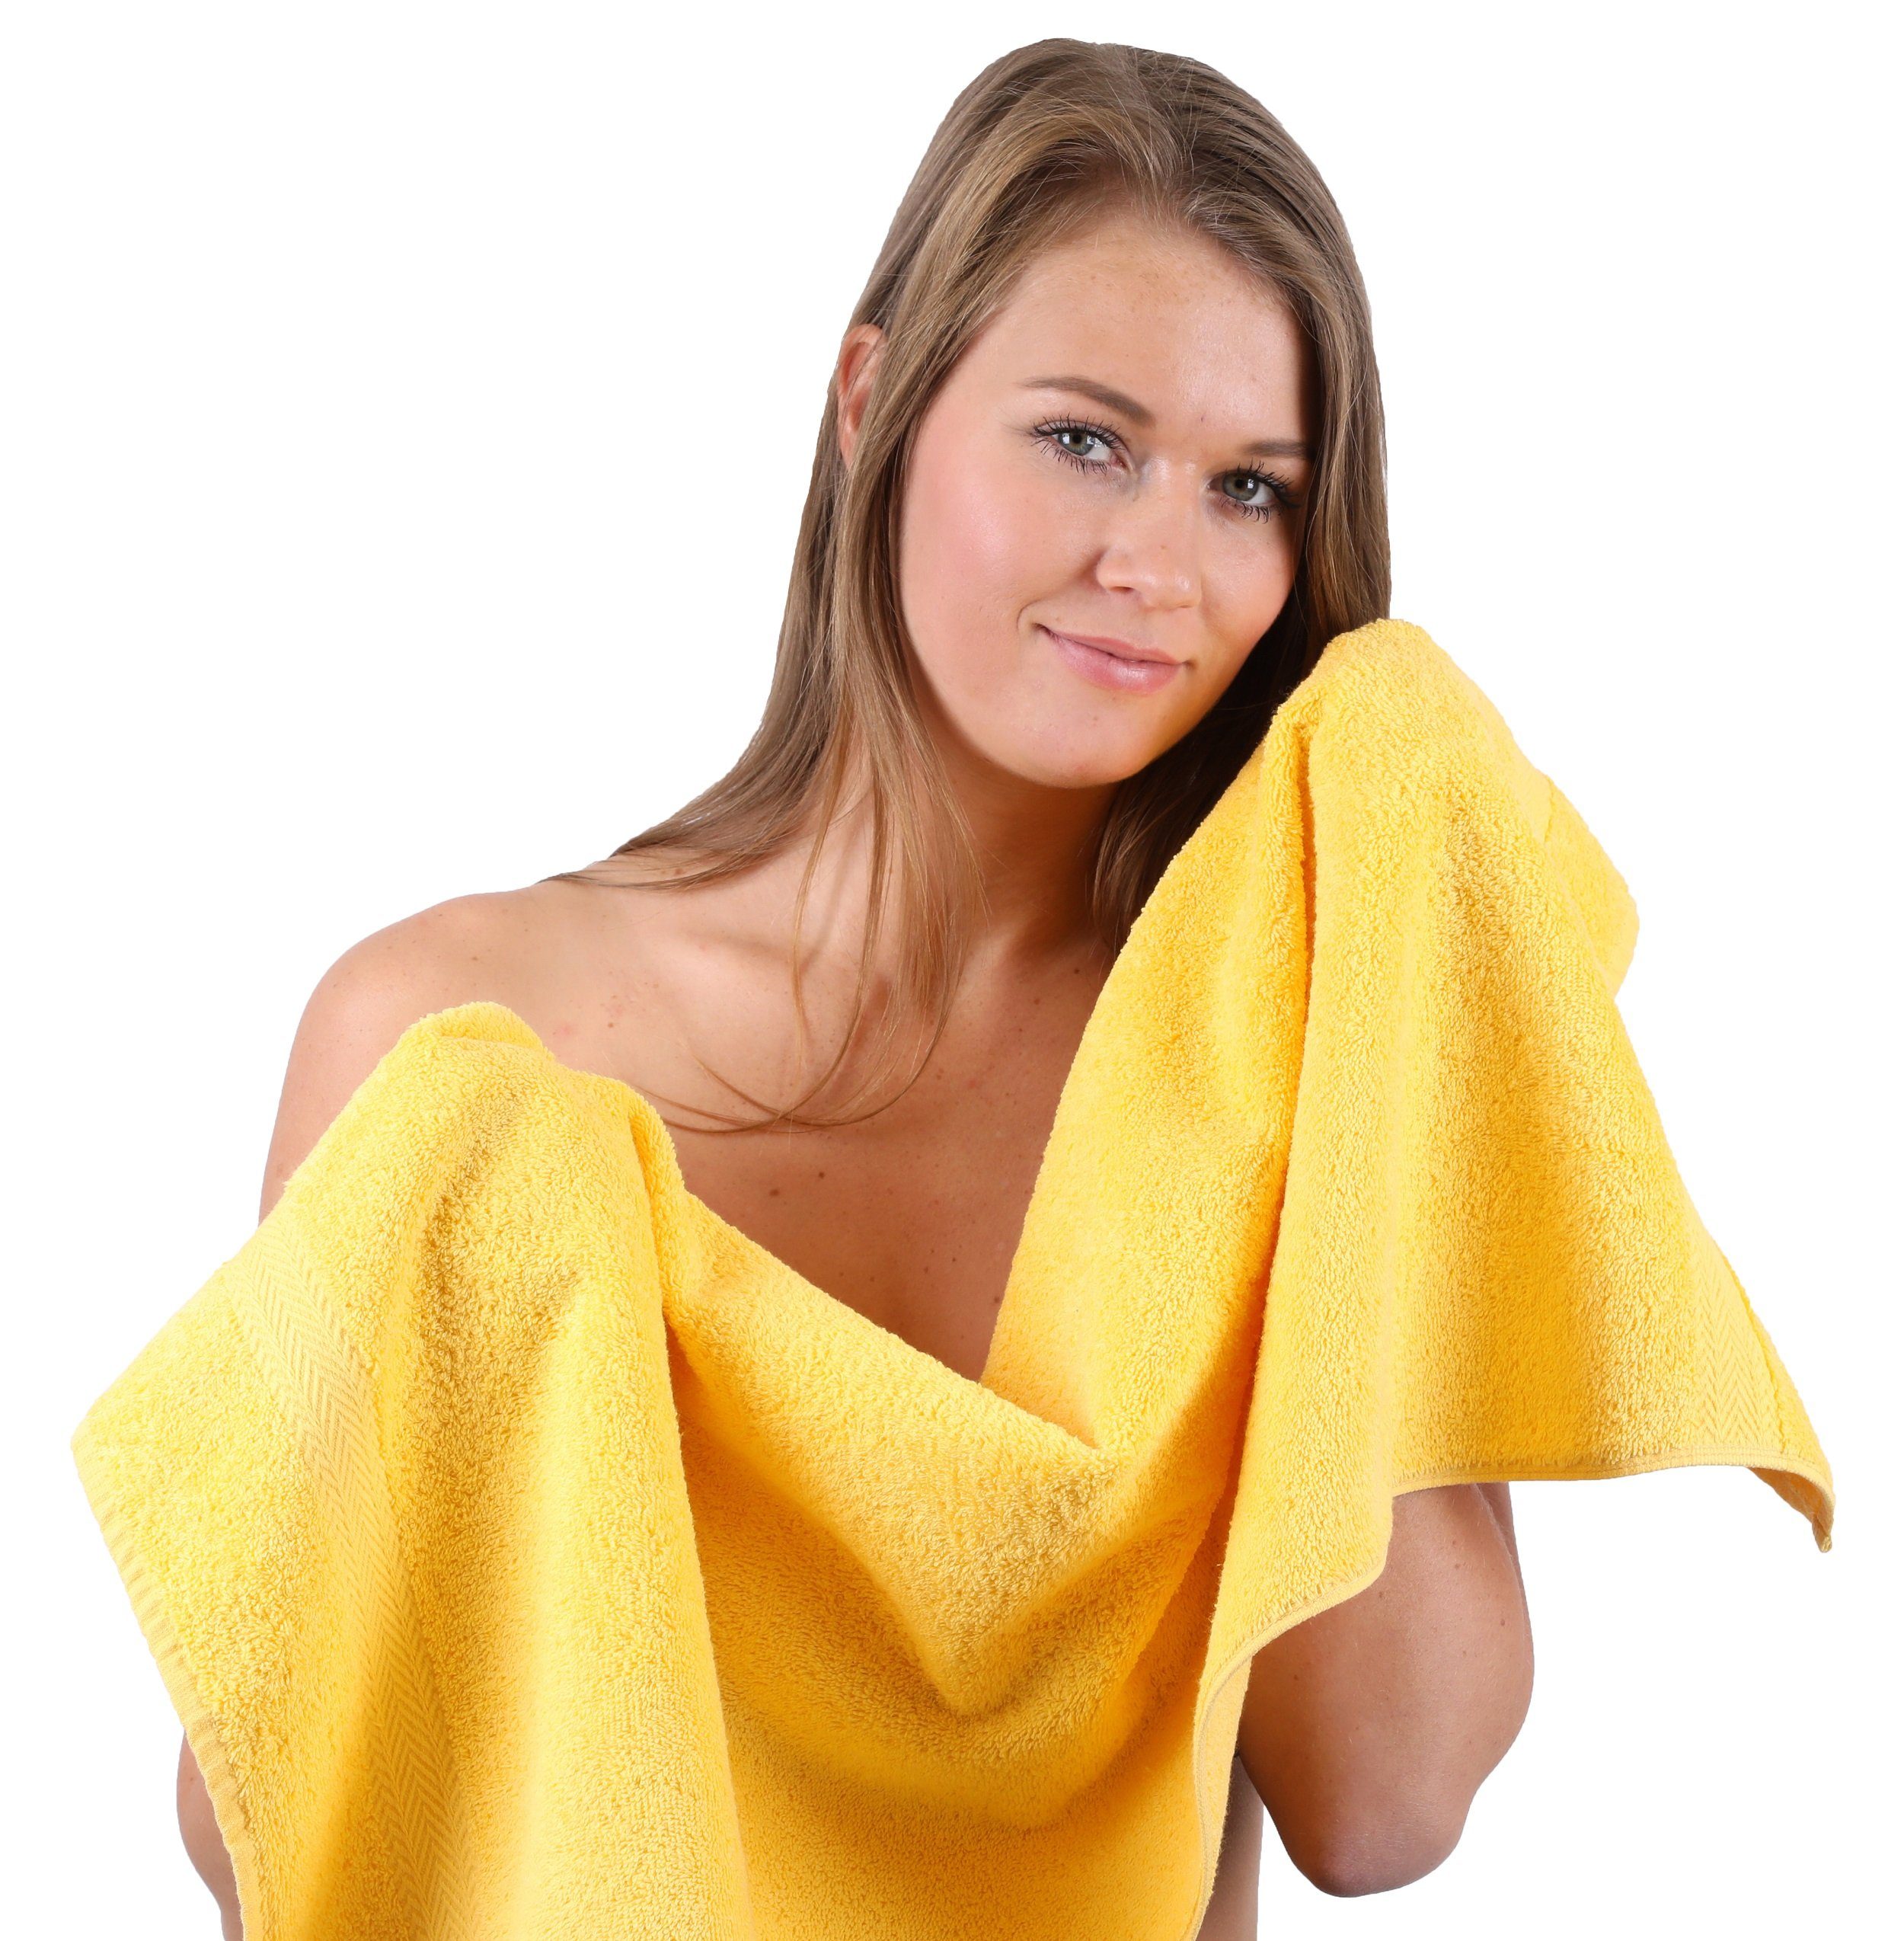 Betz Handtuch Set 10-TLG. Handtuch-Set Gelb & Farbe Baumwolle, Premium (10-tlg) Dunkelbraun, 100